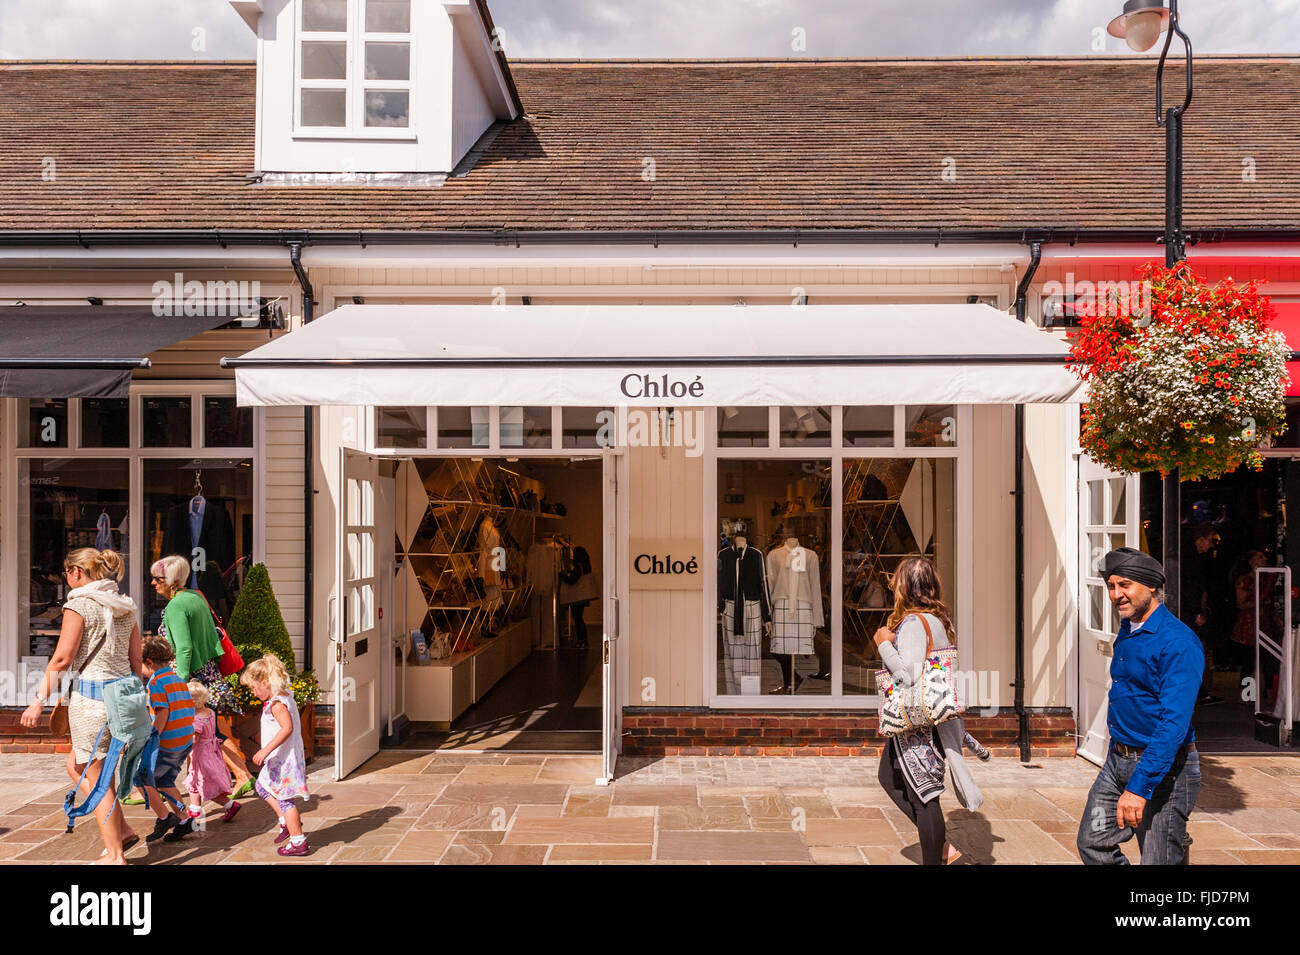 Chloe-Shop speichern im Maasmechelen Village in Bicester, Oxfordshire, England, Großbritannien, Uk Stockfoto